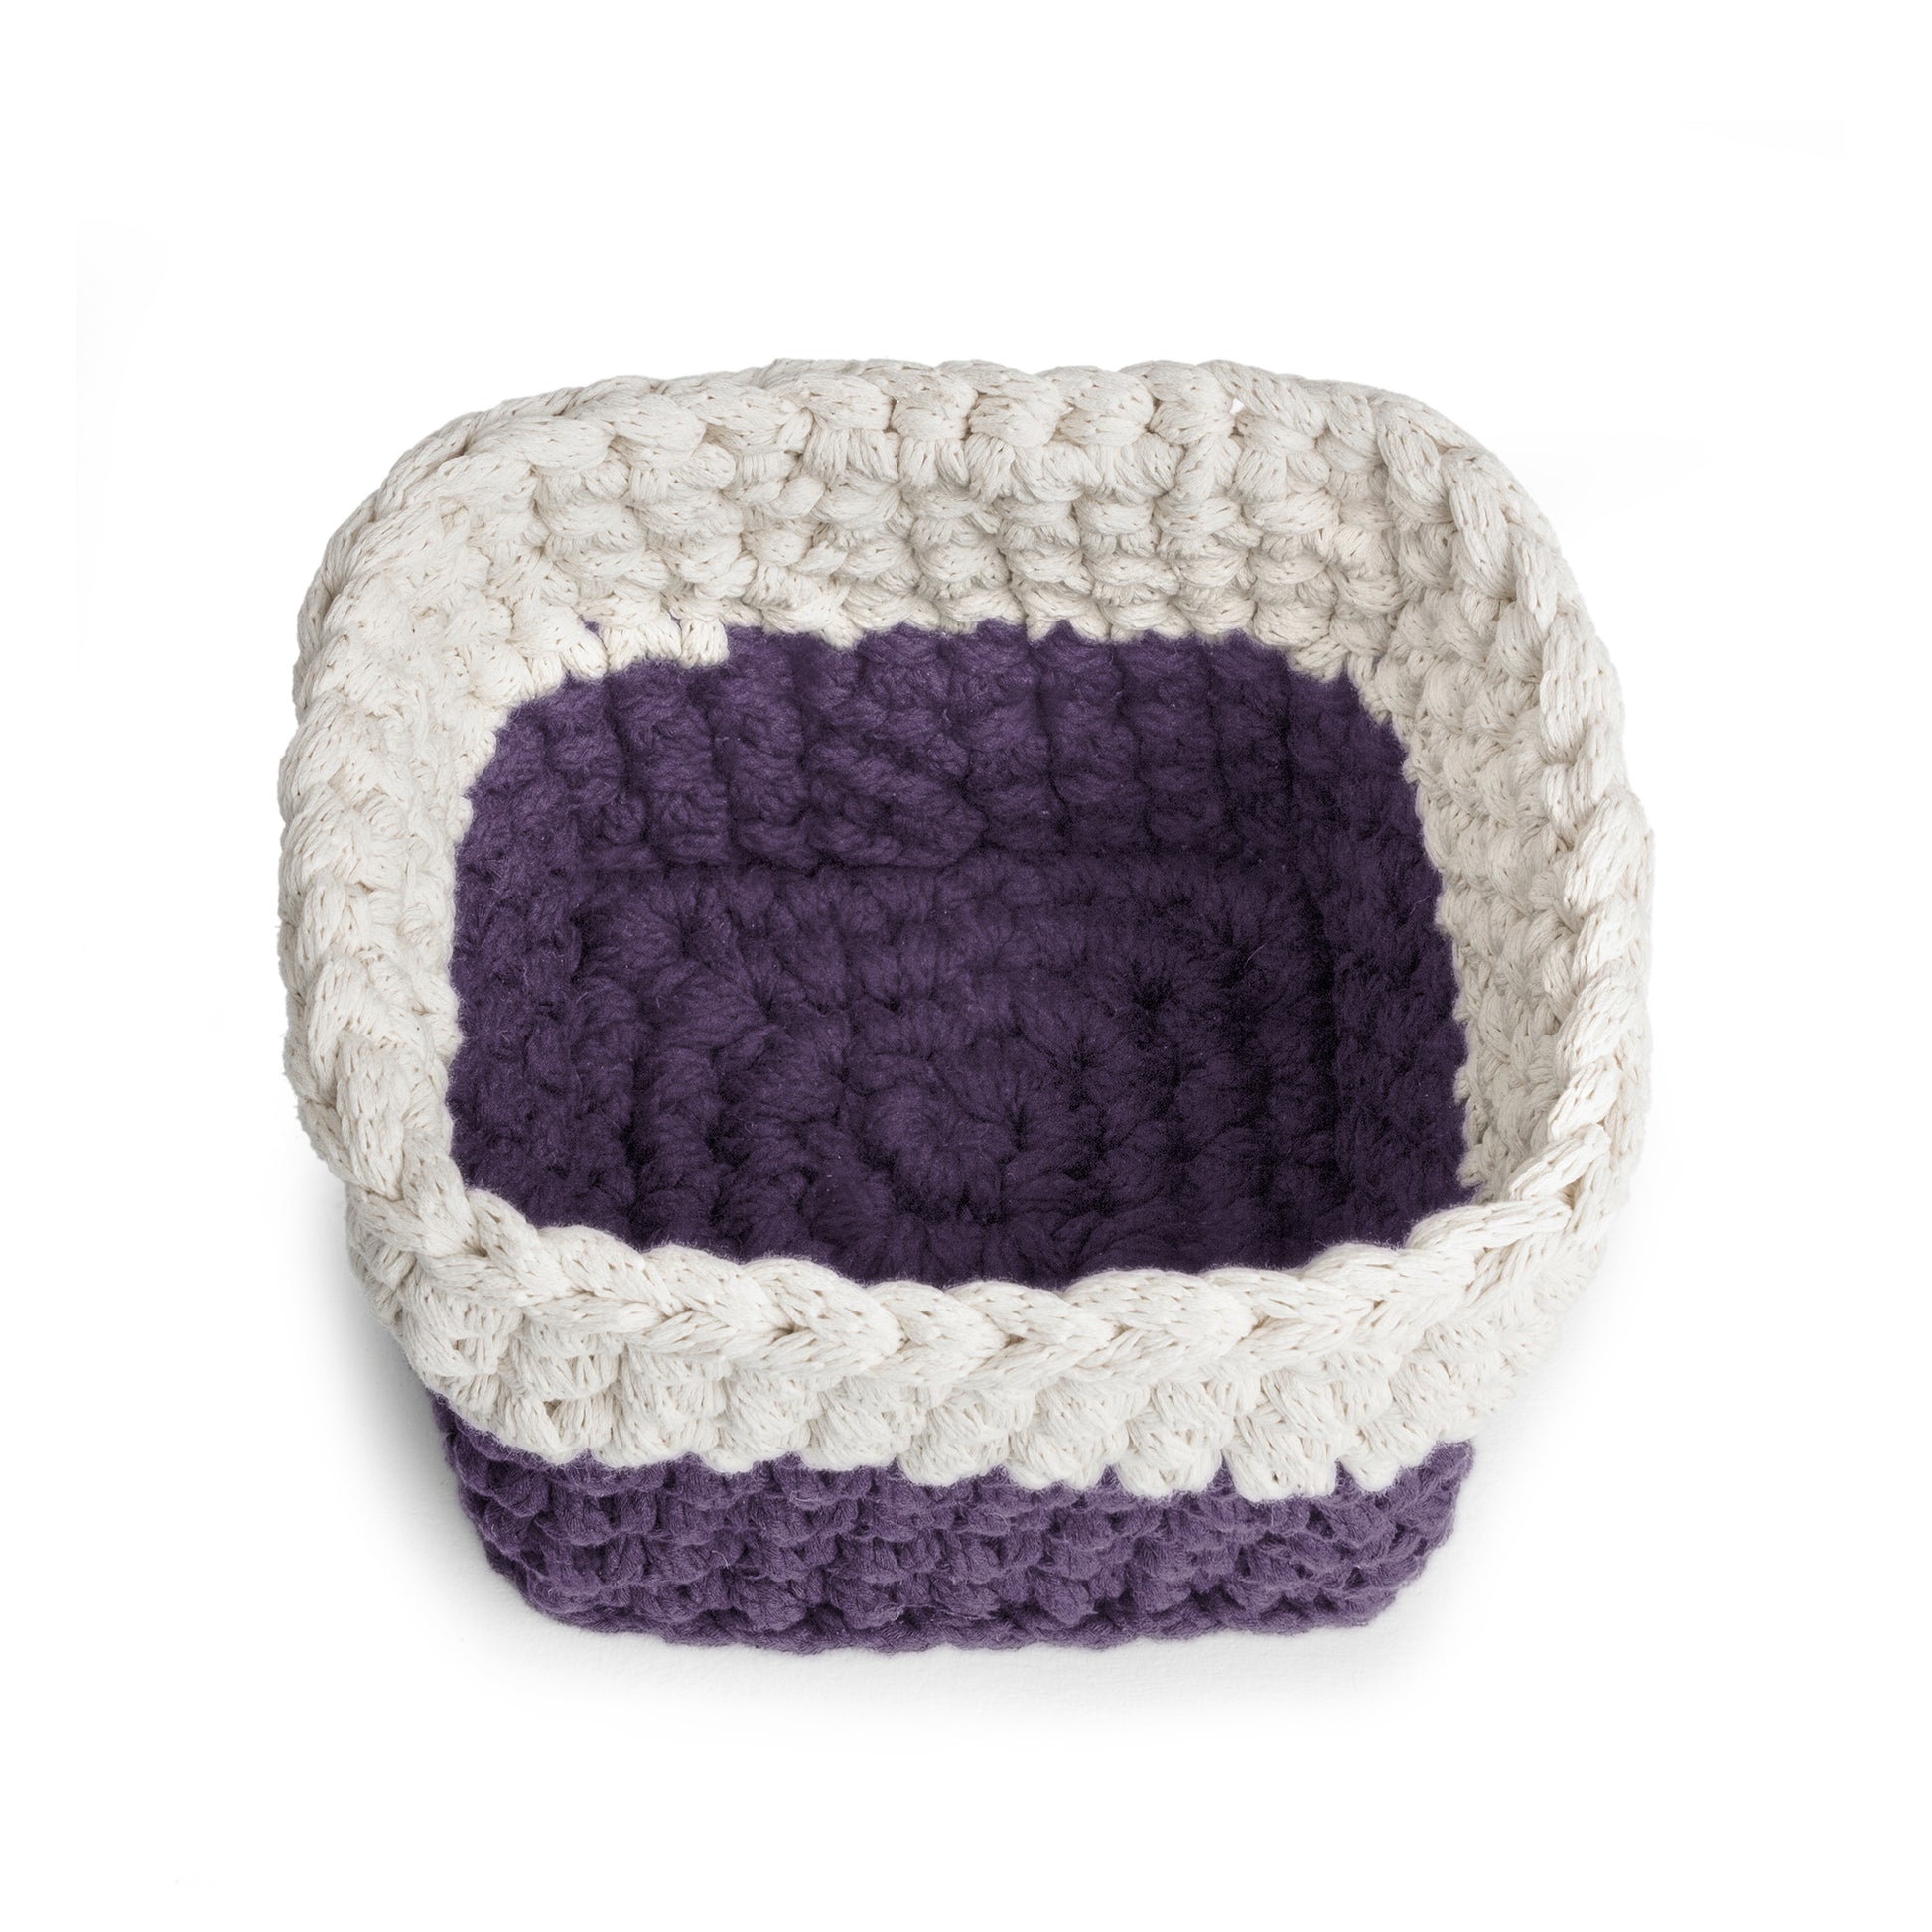 Vaso de crochê Bicolor, Roxo/Cru, com fio 100% algodão. 